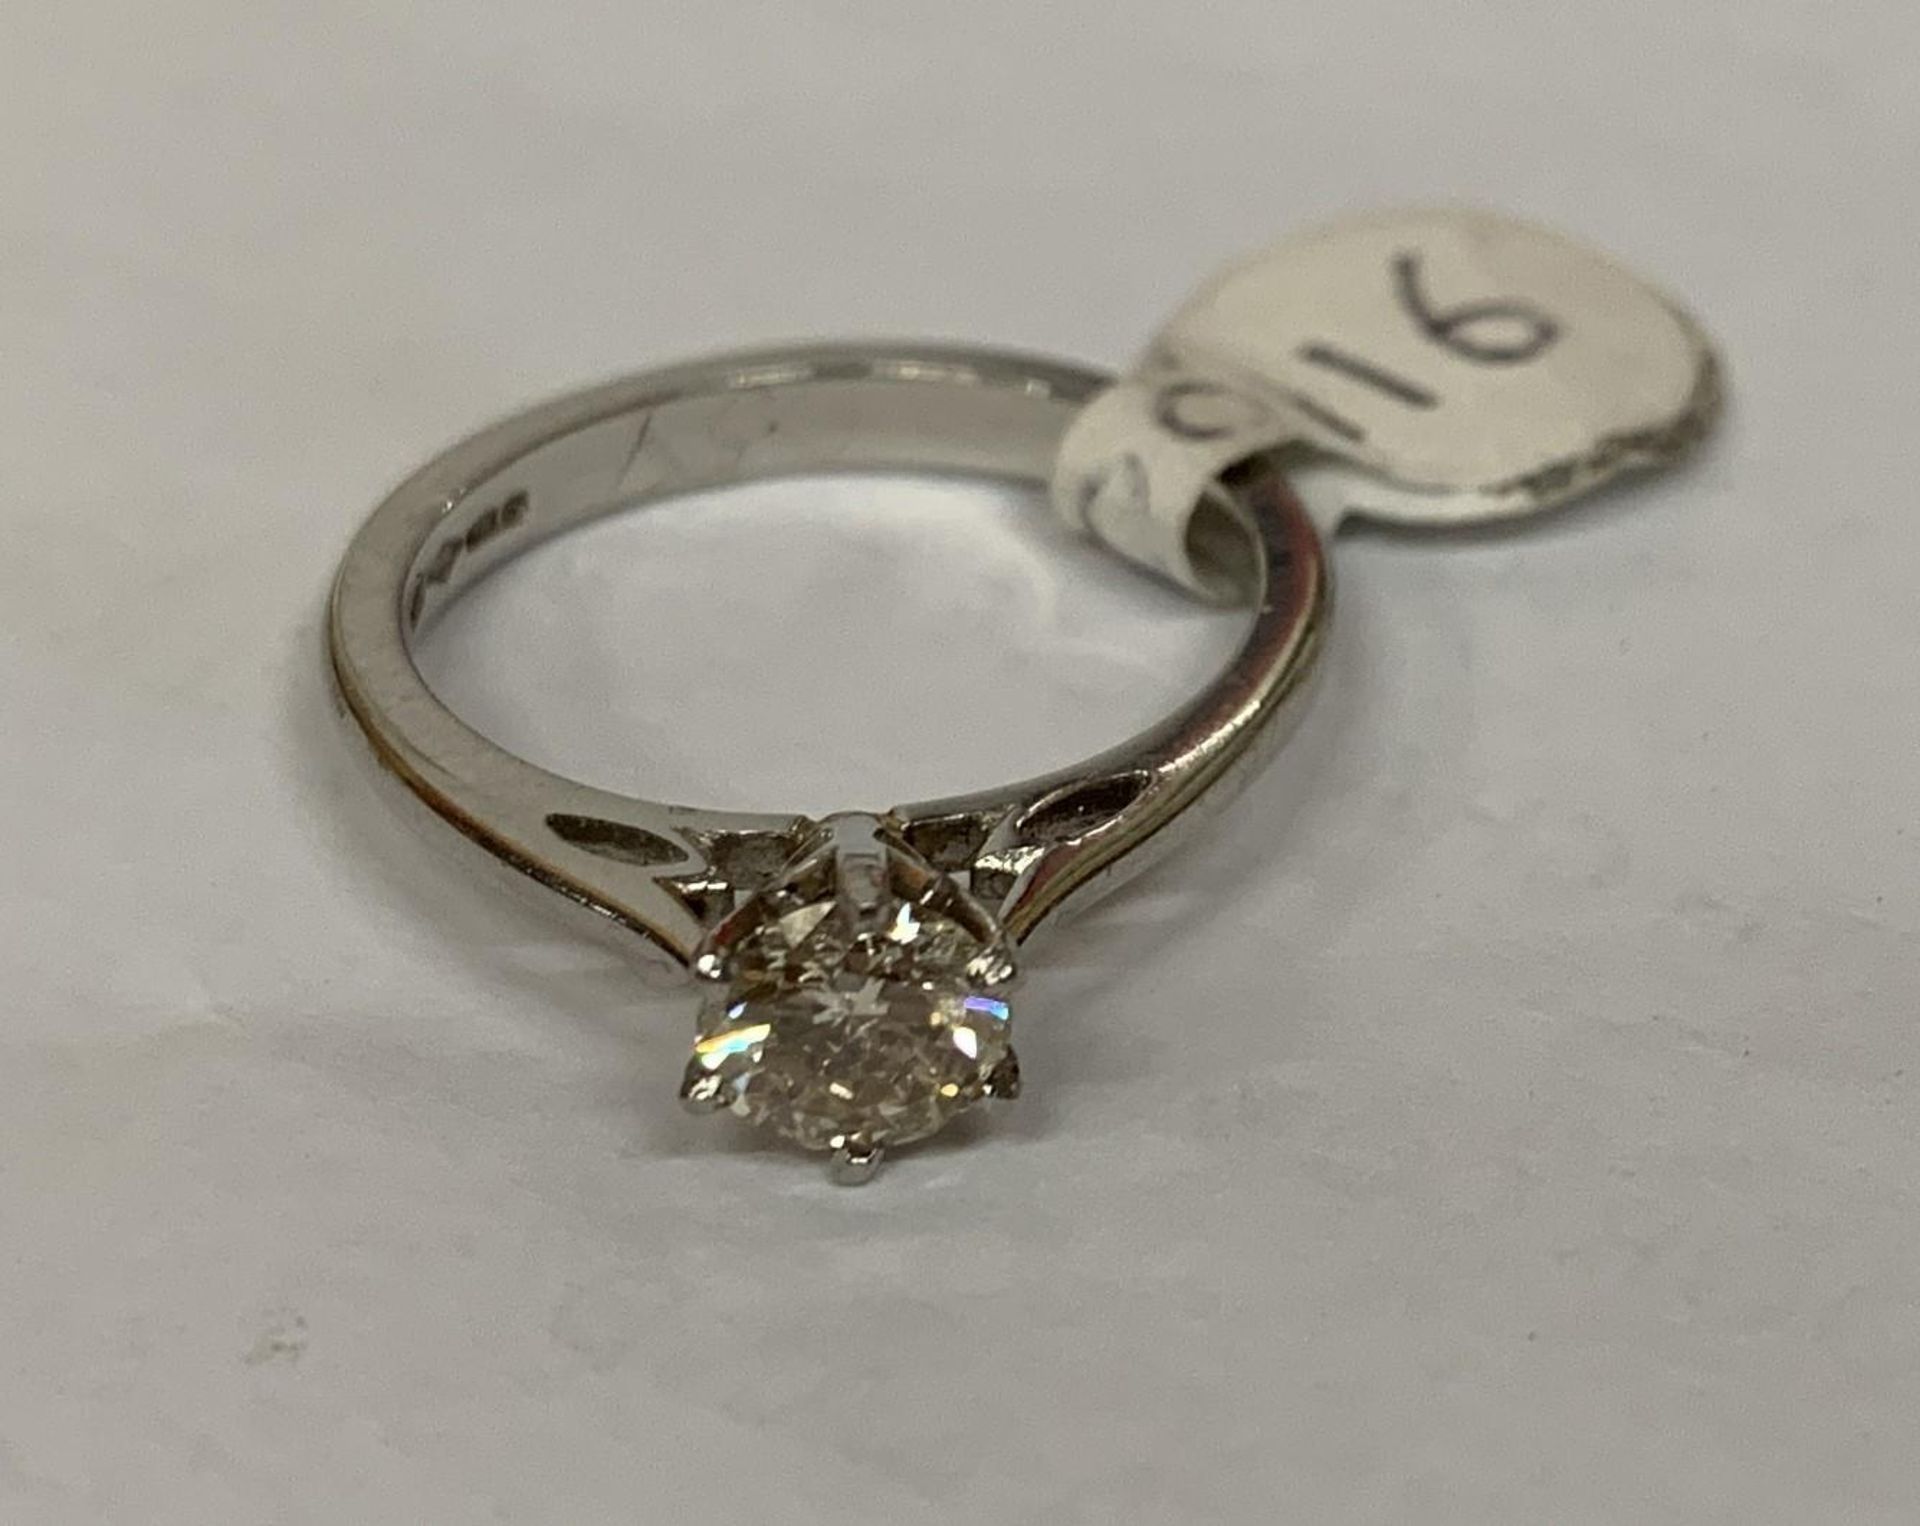 A LADIES' HALF CARAT DIAMOND AND PLATINUM RING